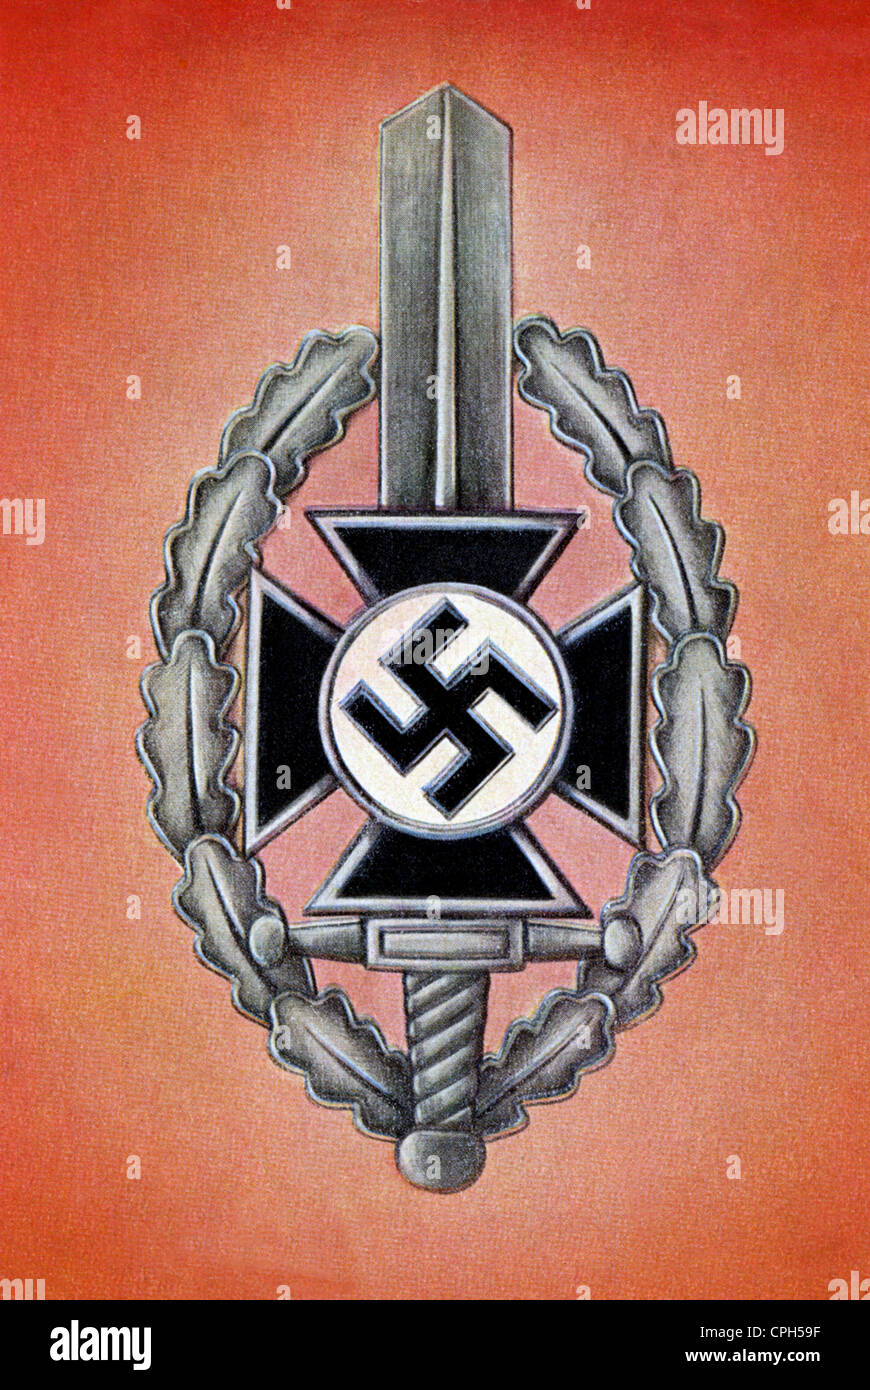 National-socialisme / nazisme, 1933 - 1945, droits additionnels-Clearences-non disponible Banque D'Images